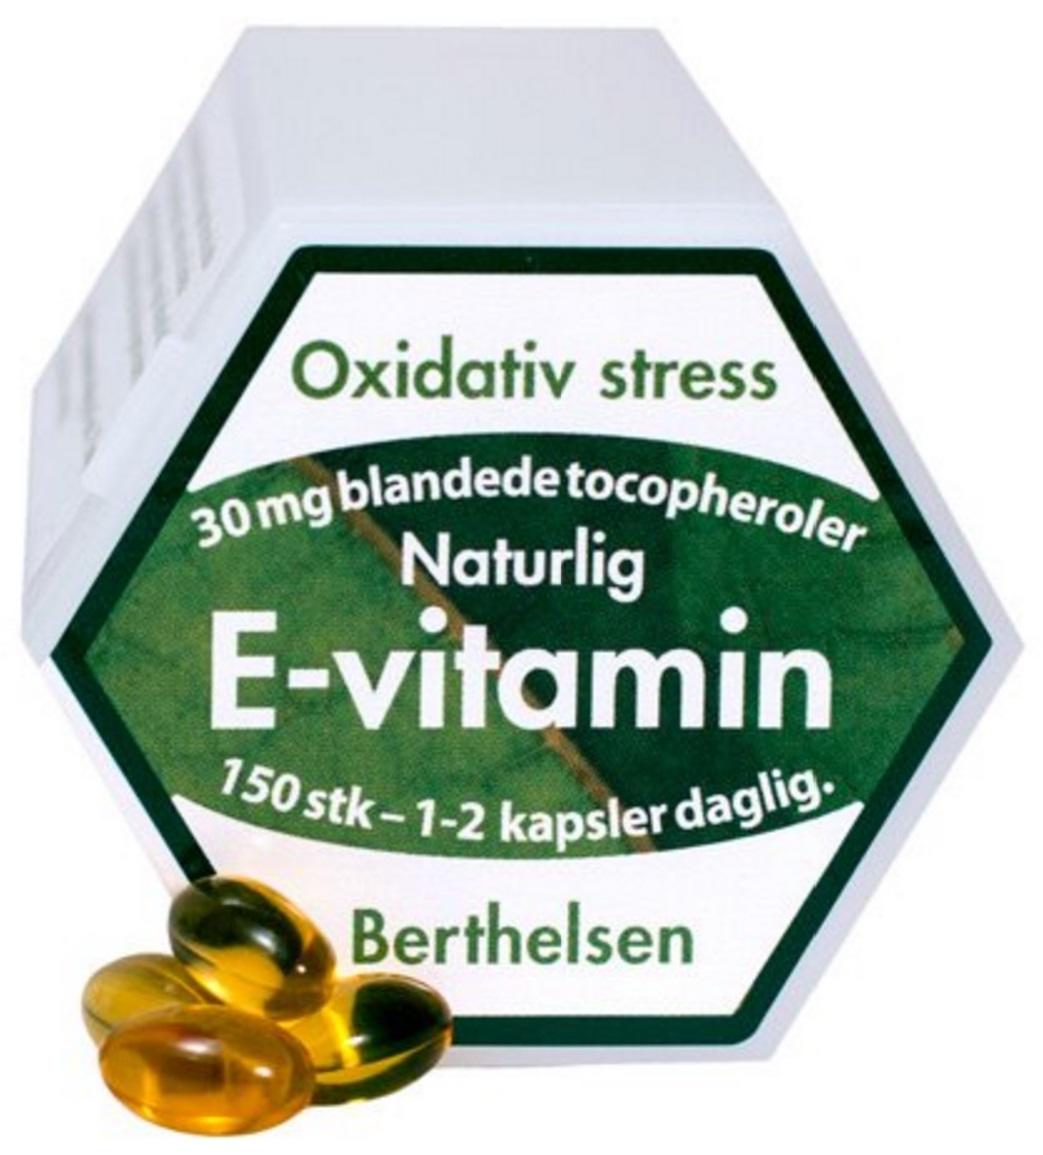 Billede af Berthelsen E-vitamin, 150kap.